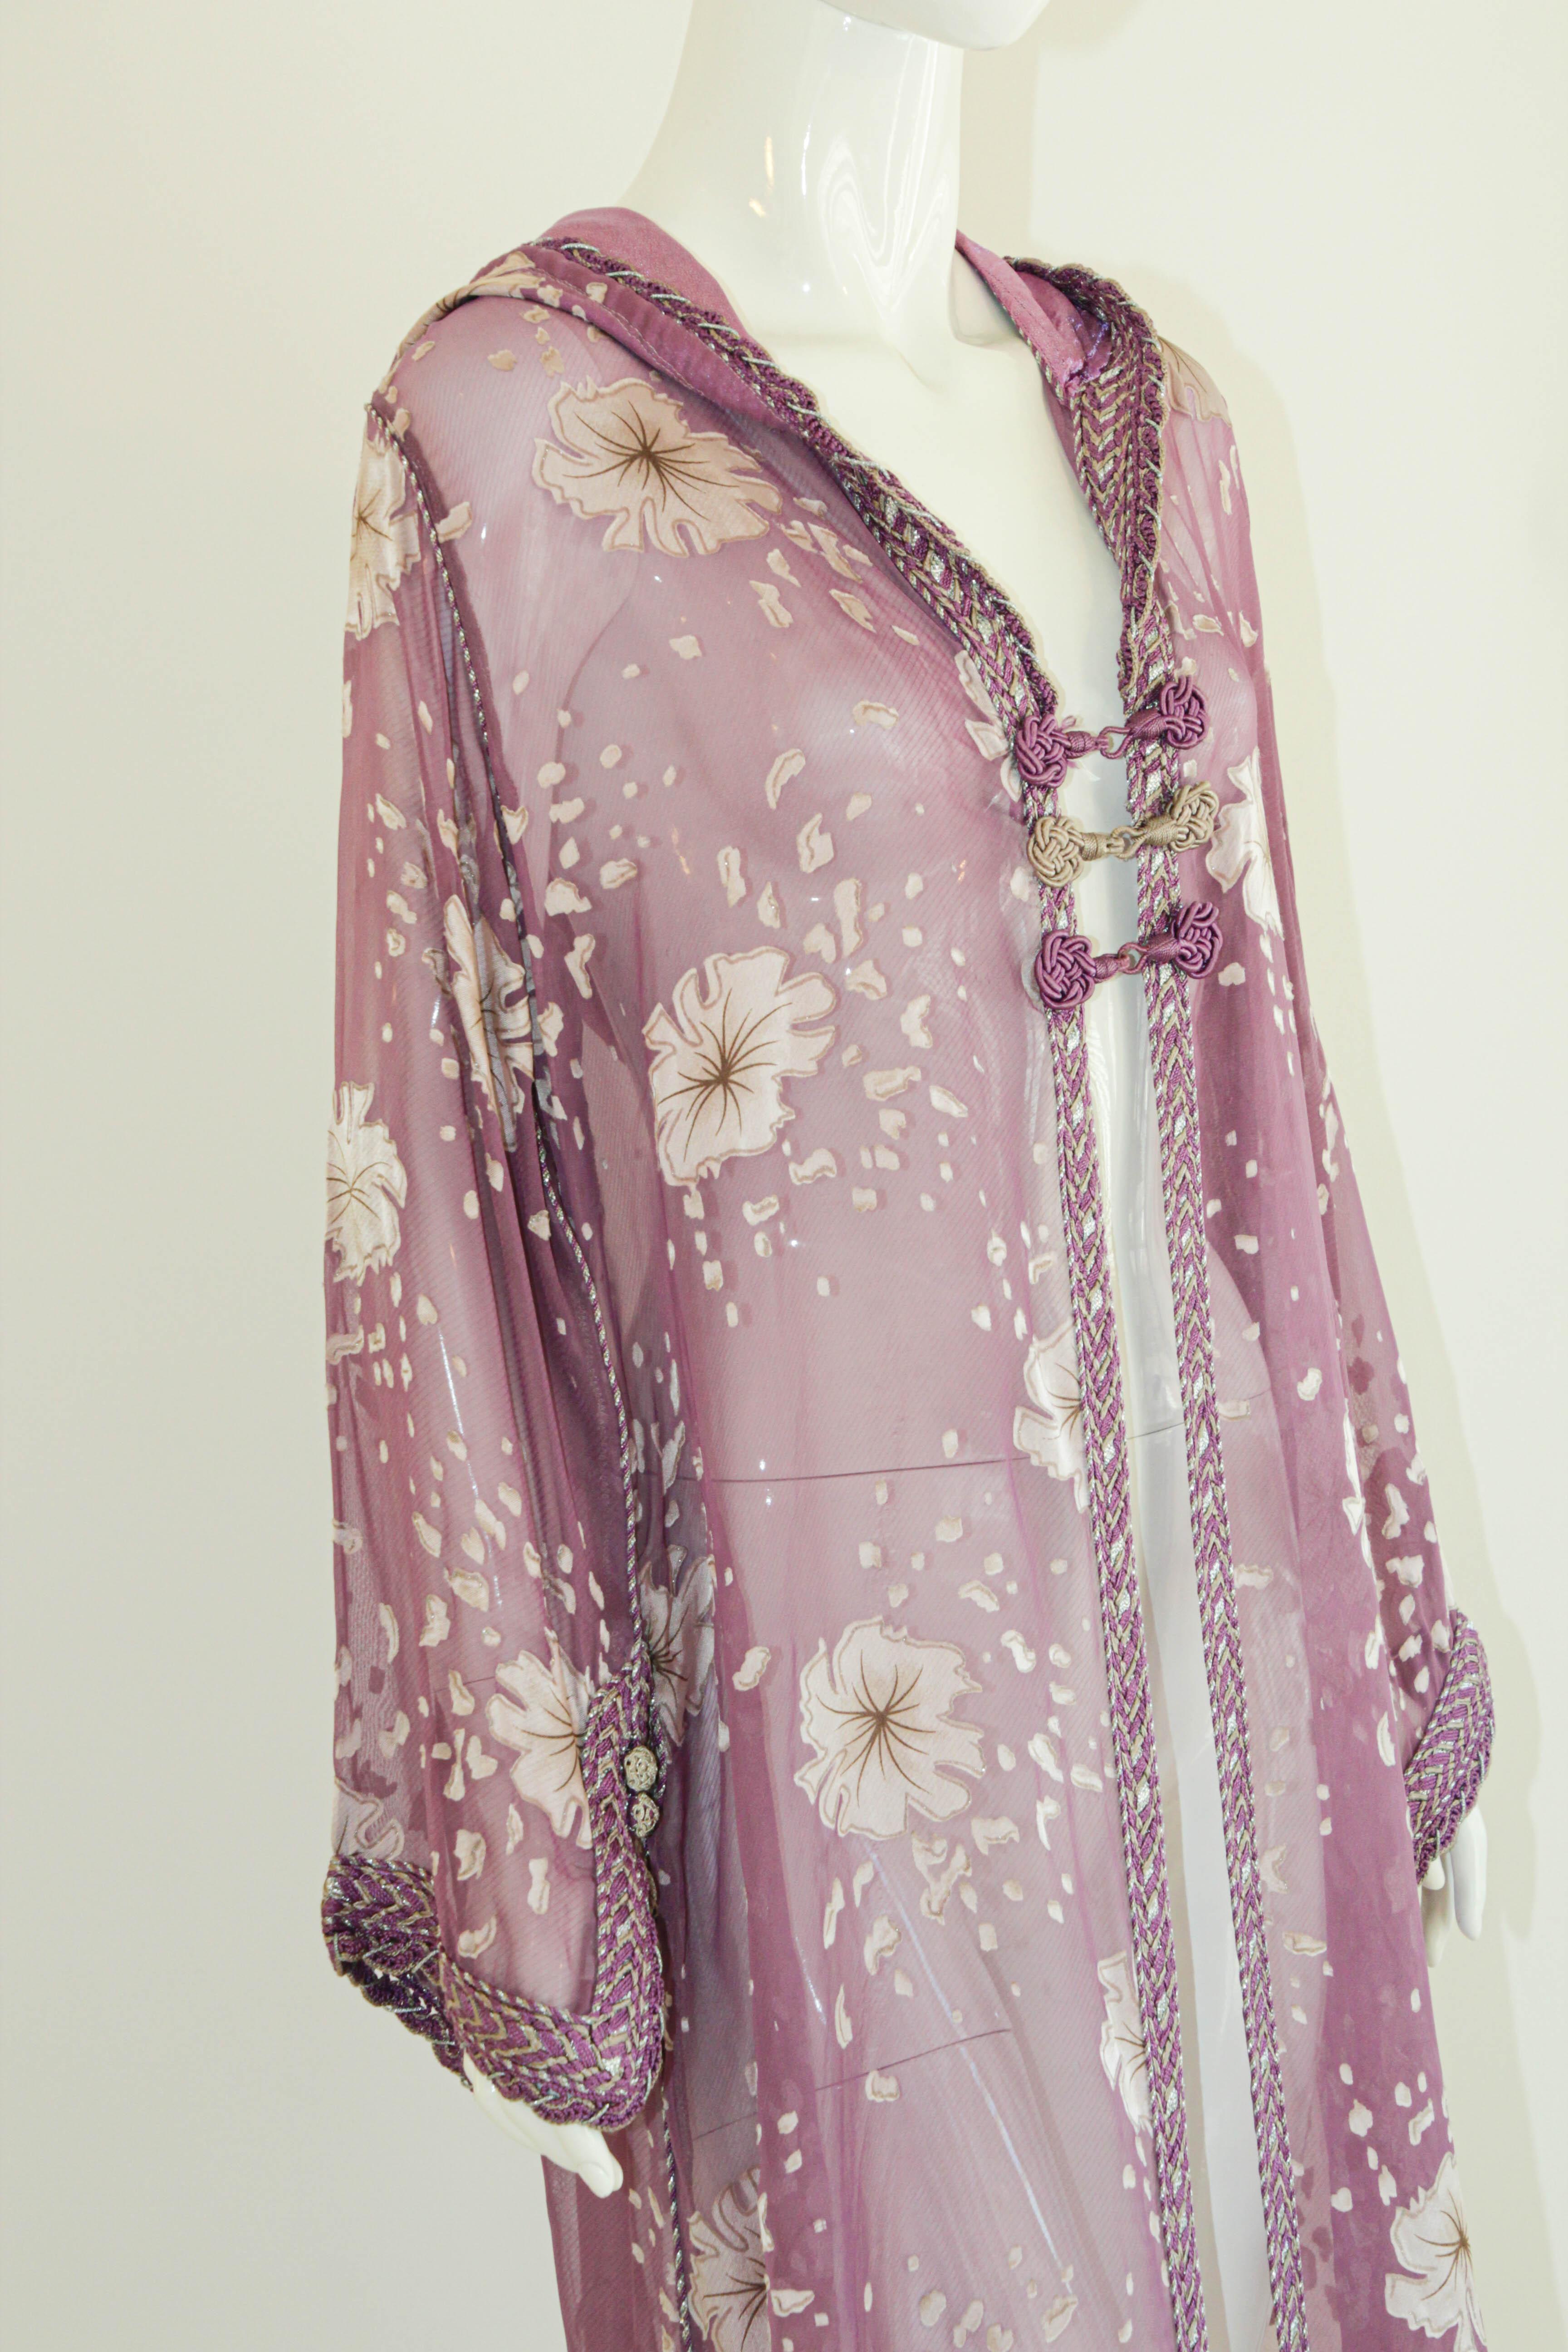 Moroccan Lavender Kaftan Maxi Dress Hooded Vintage Caftan For Sale 5